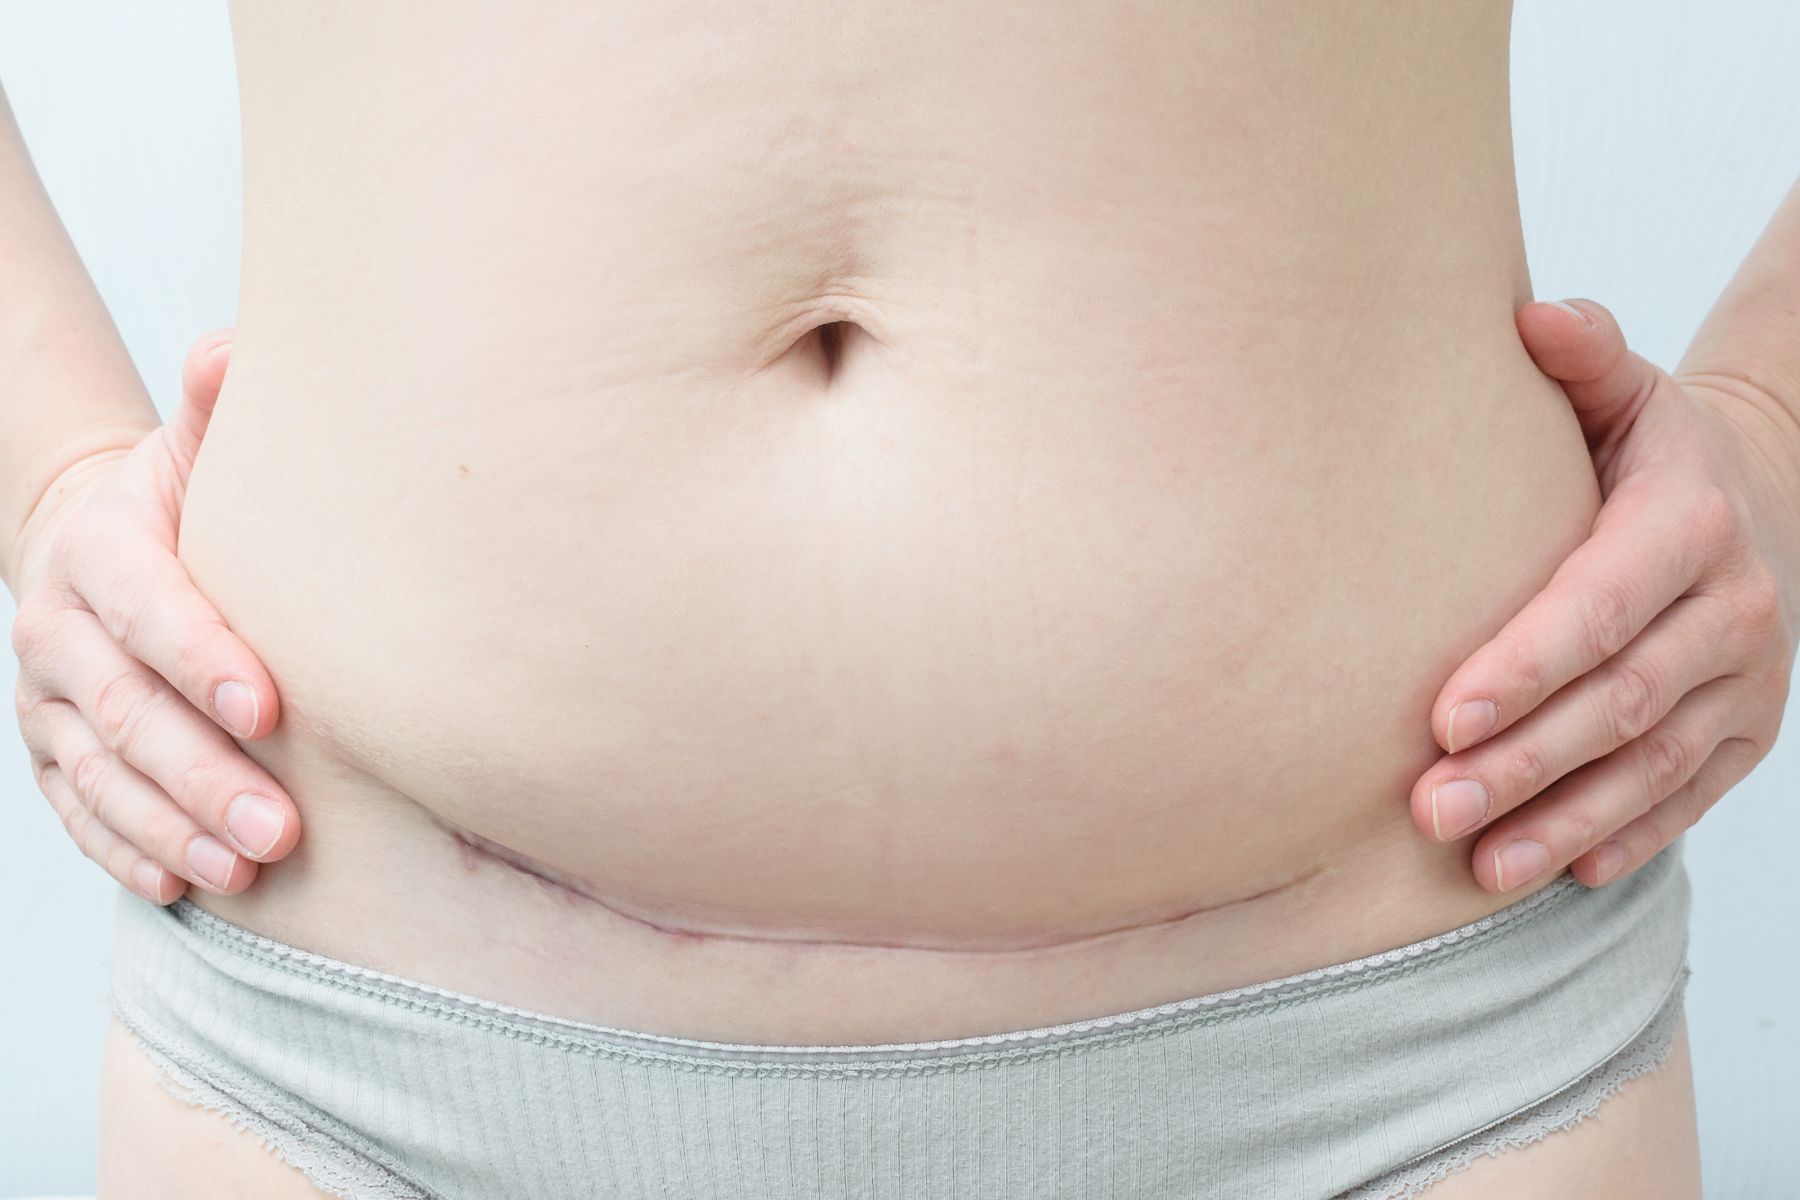 Frauen, die mit Kaiserschnitt gebären, müssen sich oft dafür rechtfertigen. Dabei ist eine operative Geburt keinesfalls "the easy way out". Ein Erfahrungsbericht.